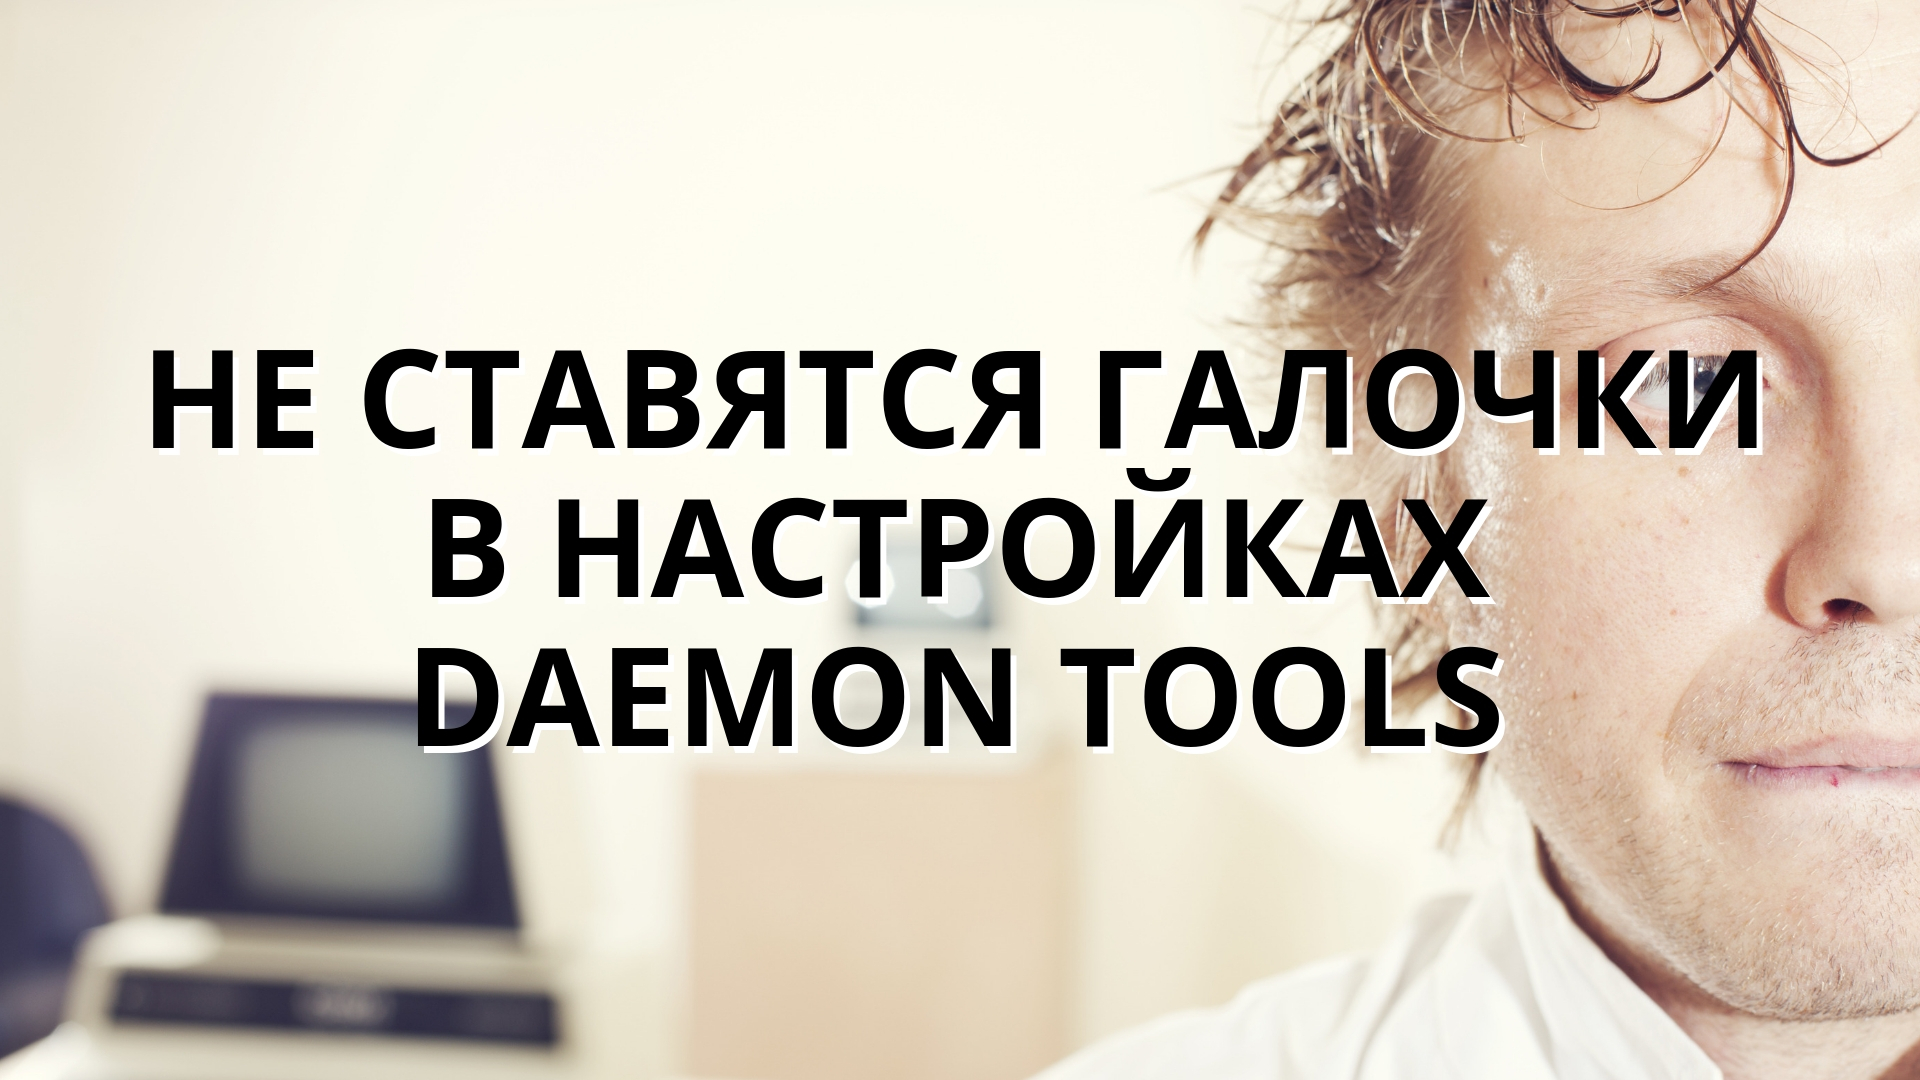 Не ставятся галочки в настройках Daemon Tools